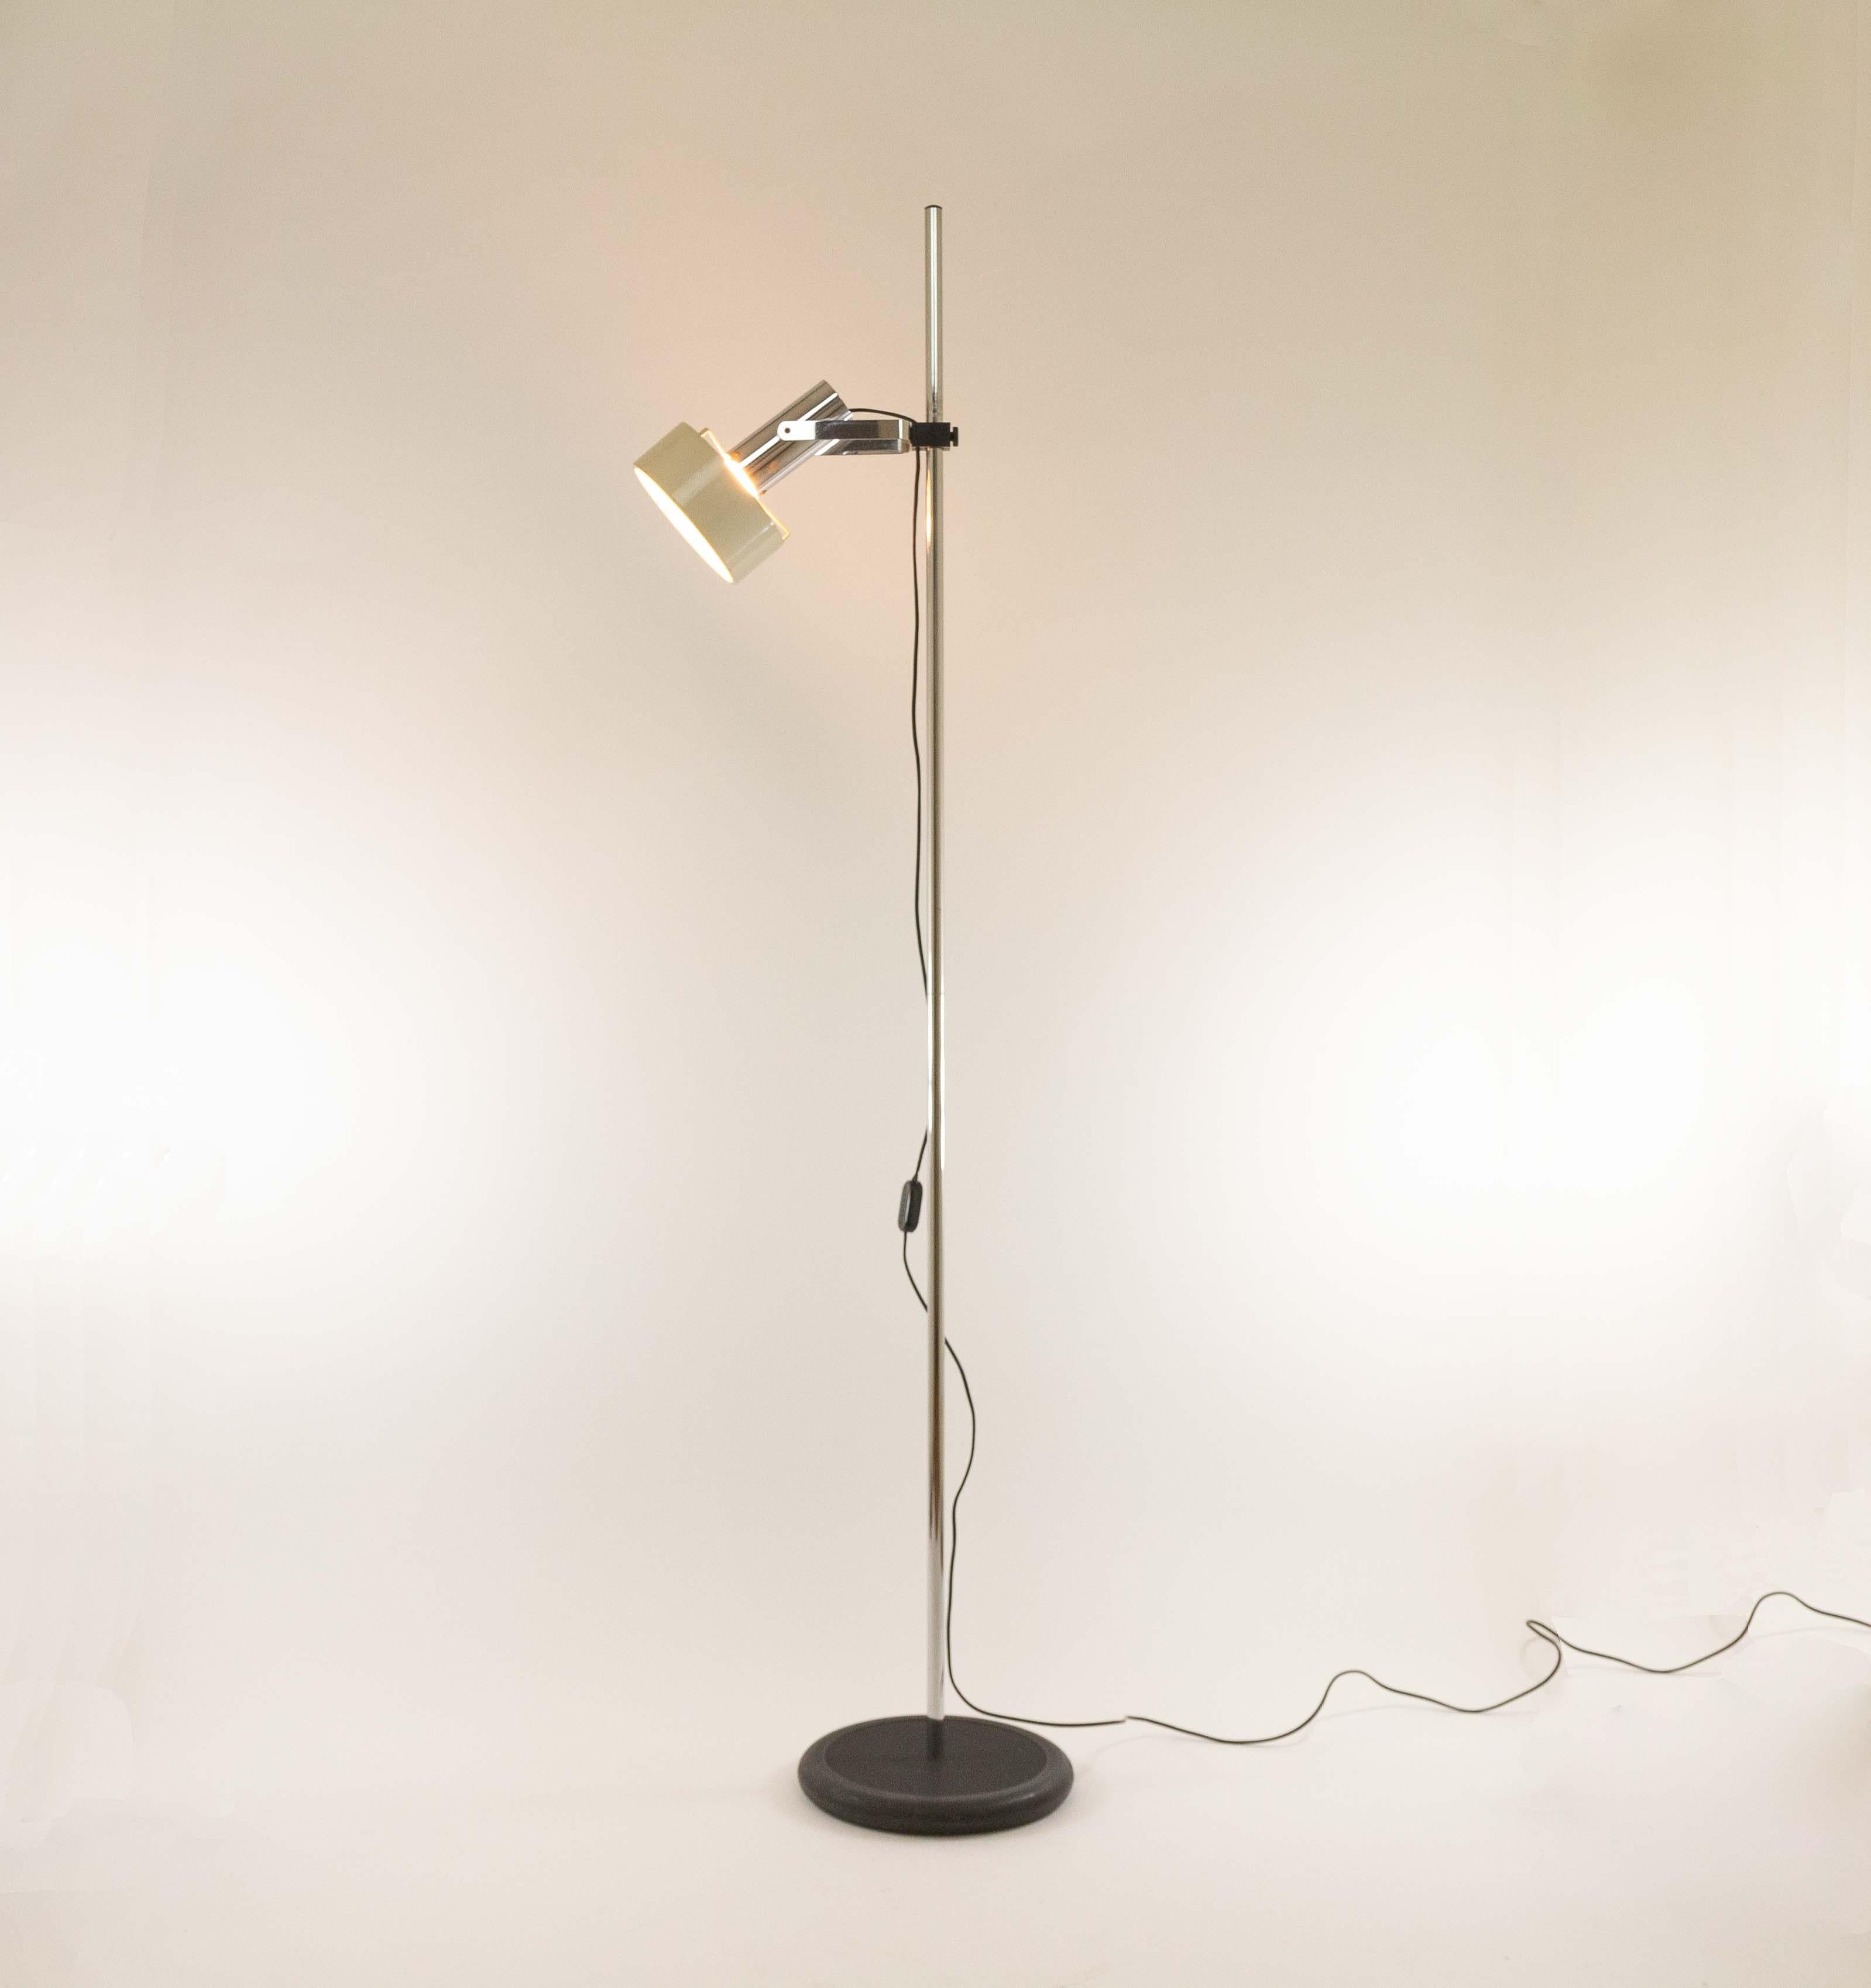 Modèle italien de lampadaire Phon produit par Stilnovo dans les années 1960.

La lampe se compose d'un spot réglable partiellement laqué blanc qui peut également être abaissé, d'une base circulaire relativement lourde en plastique noir et d'une